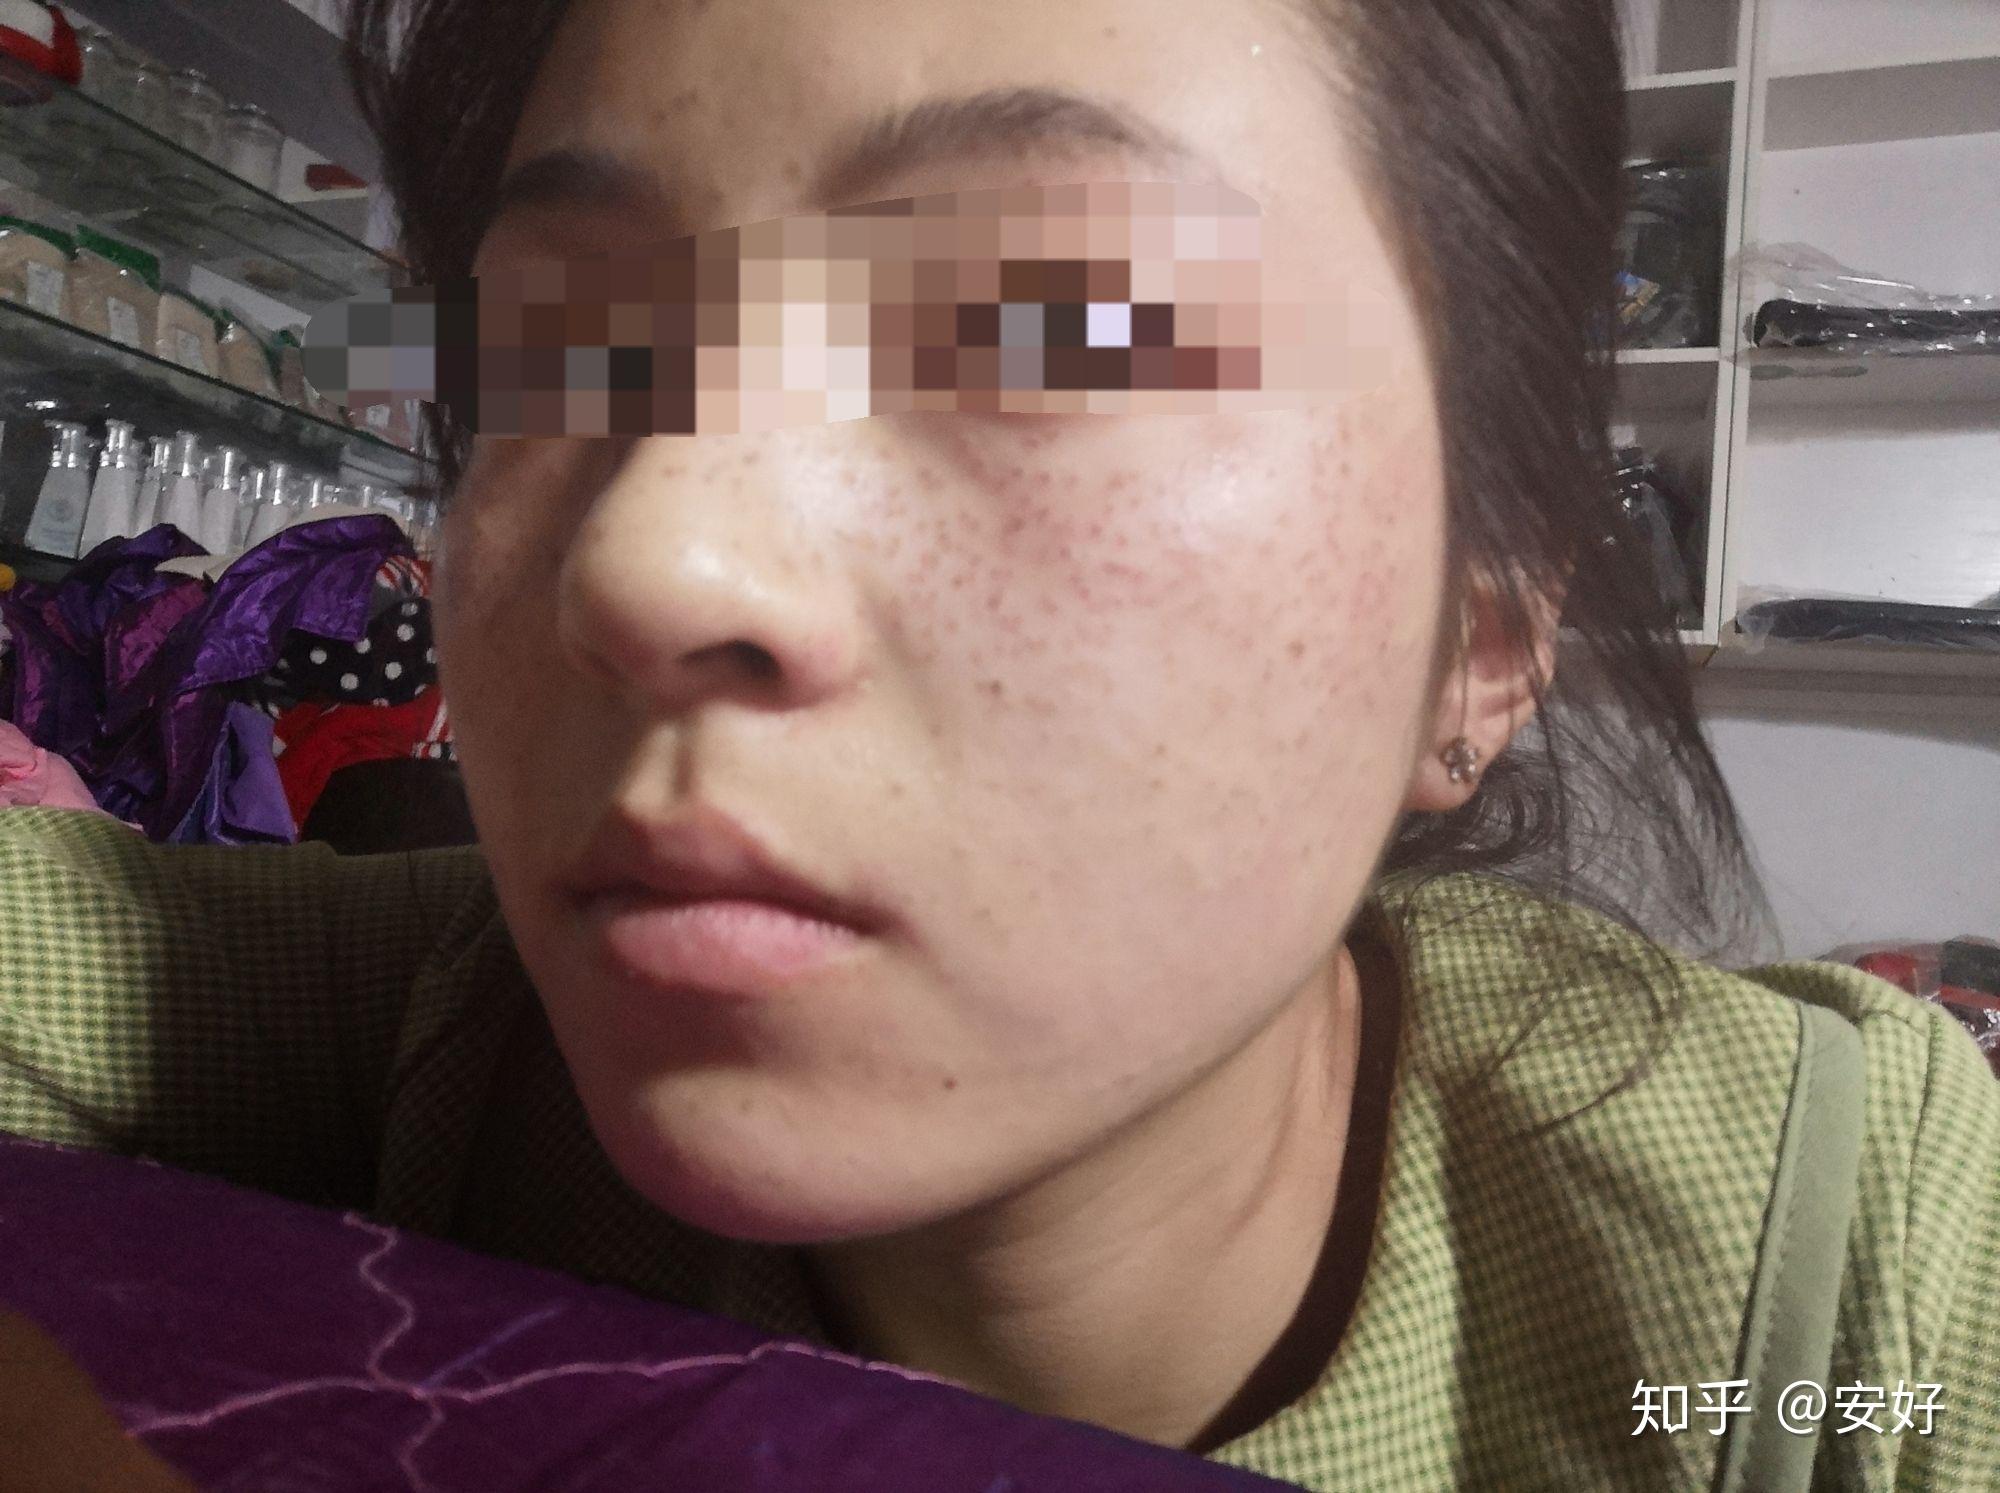 有什么好方法能让脸上的痘印消失？ - 知乎